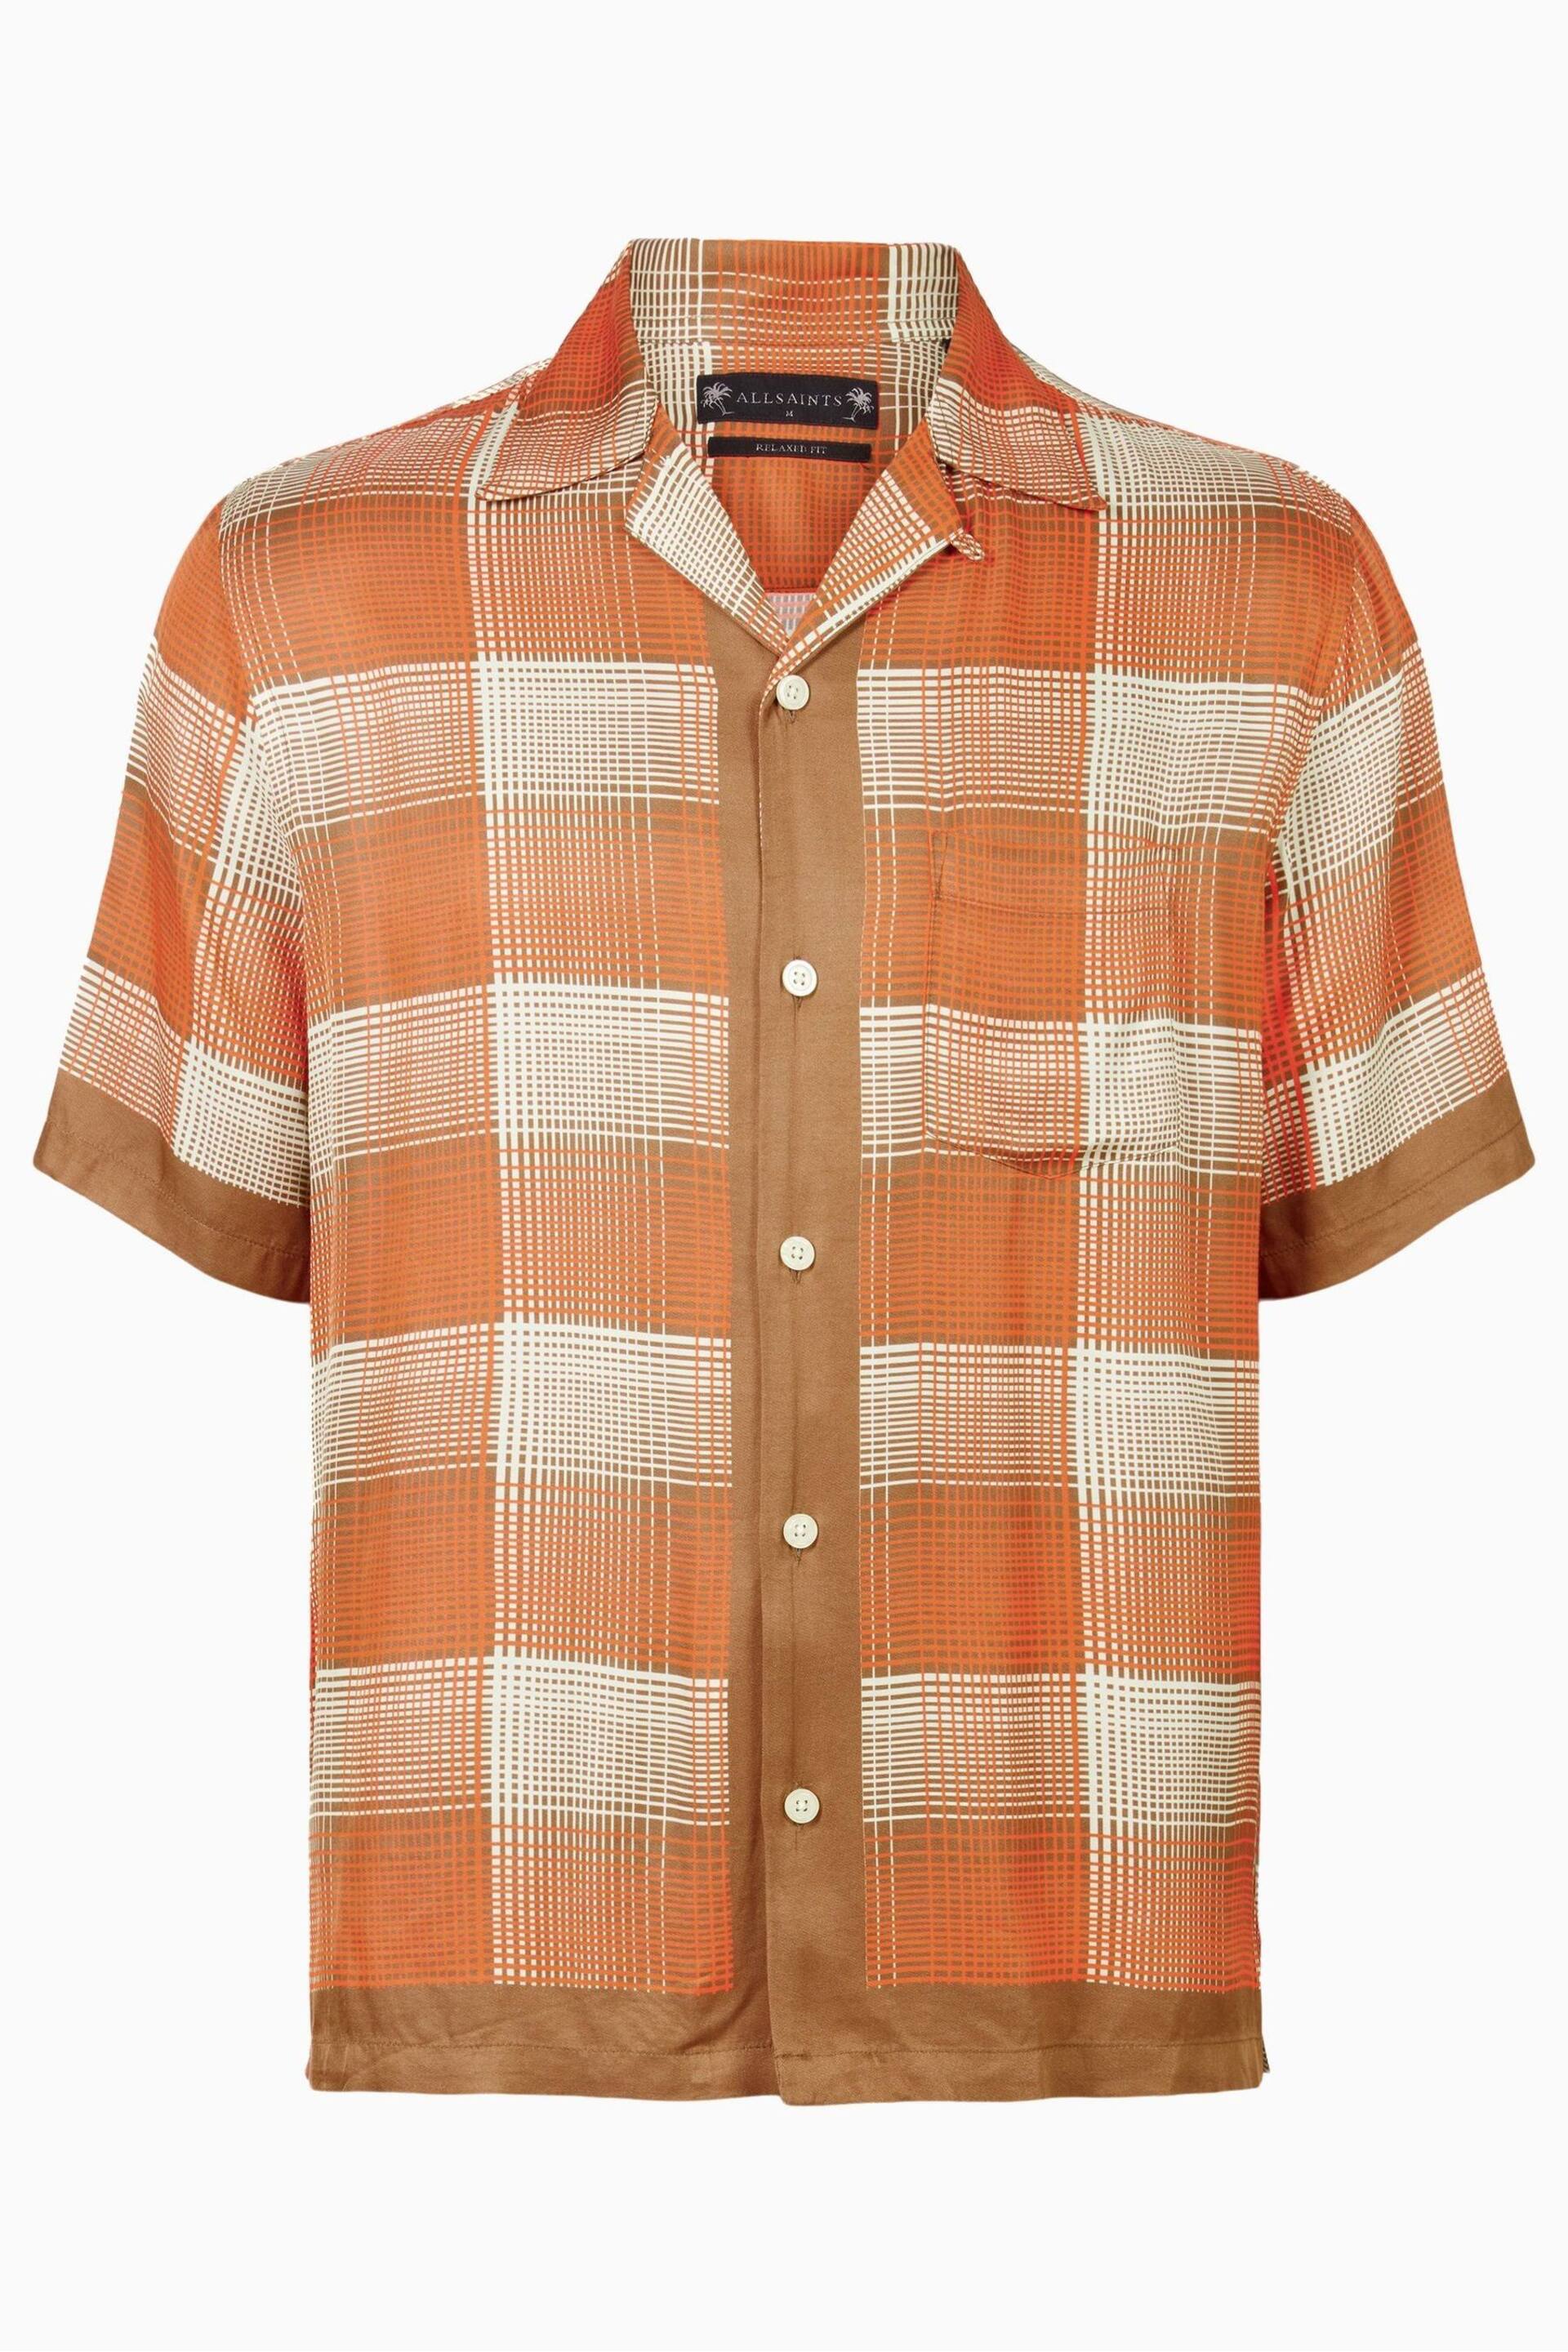 AllSaints Orange Suburus Short Sleeve Shirt - Image 6 of 6